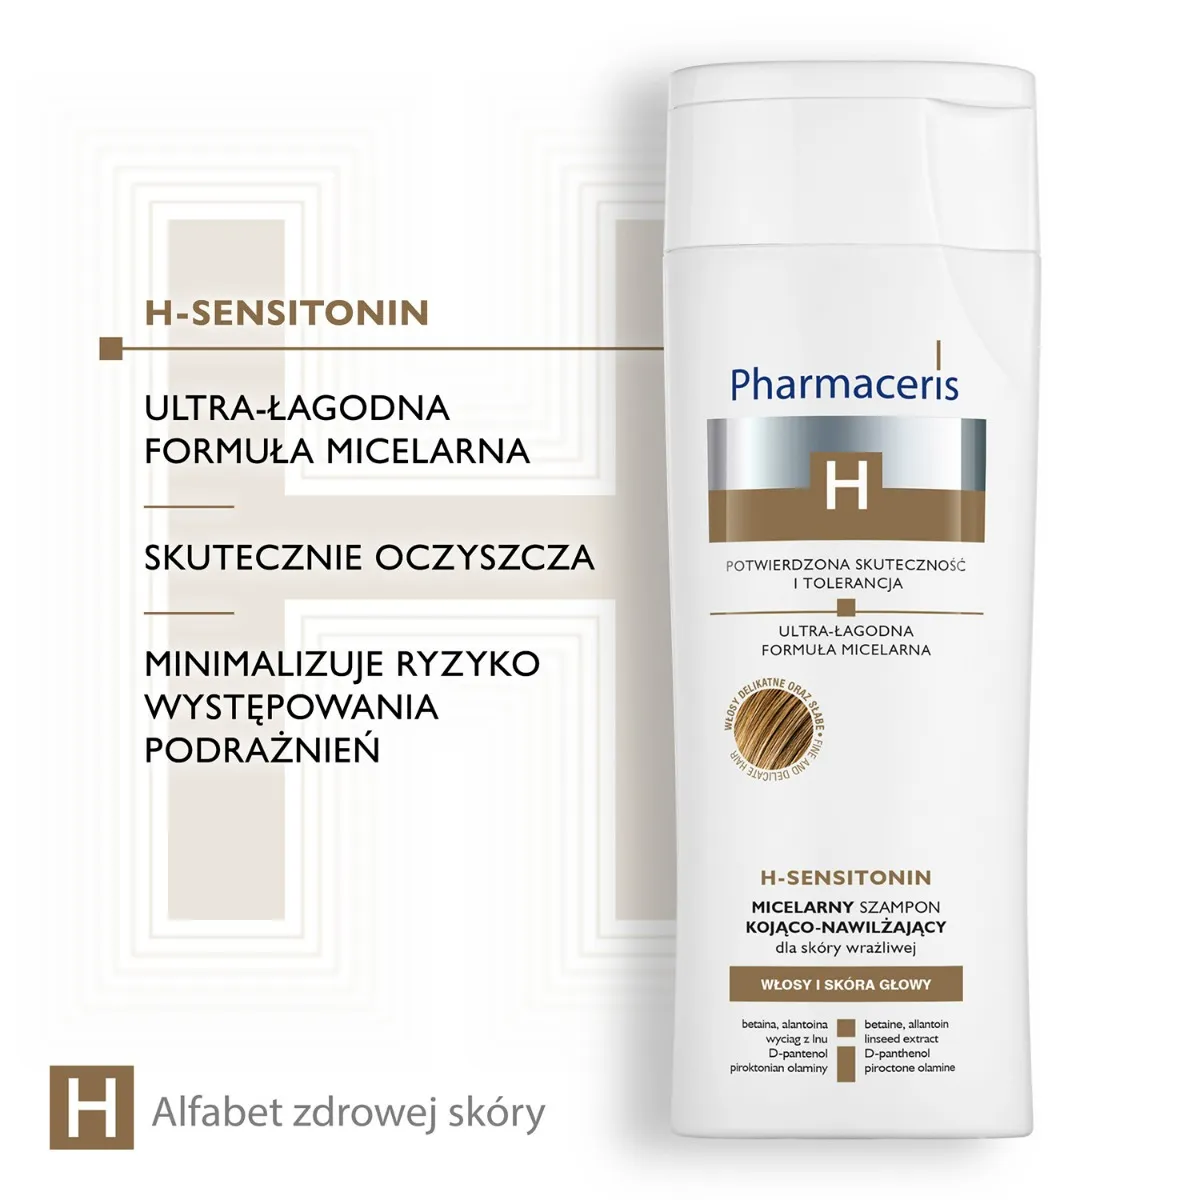 Pharmaceris H Sensitonin, micelarny szampon kojąco-nawilżający, 250 ml 